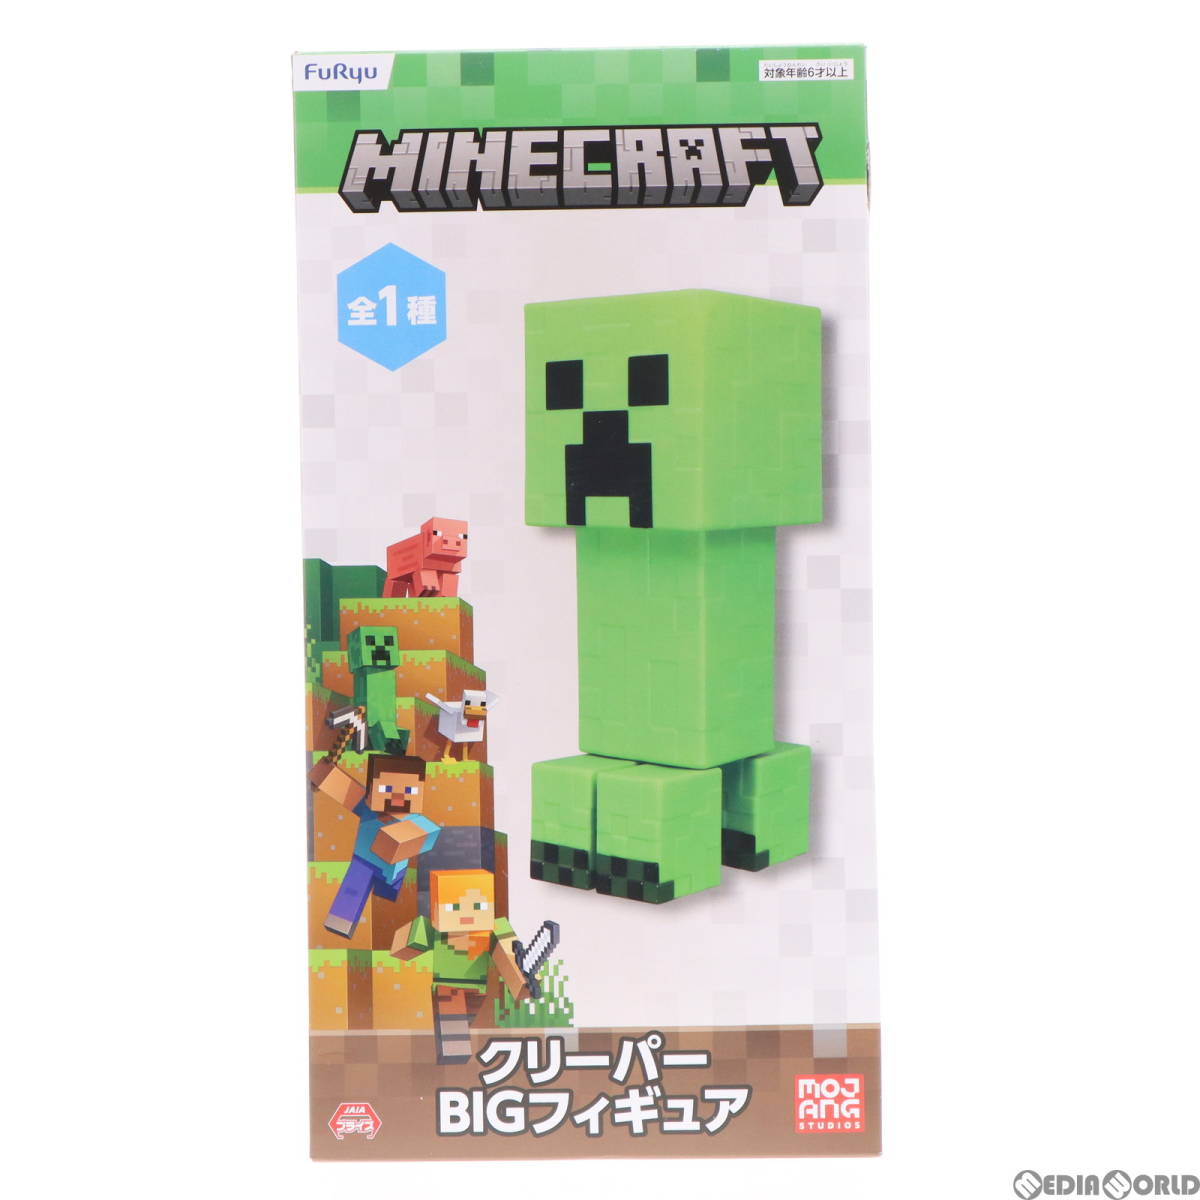 【中古】[FIG]クリーパー BIGフィギュア Minecraft(マインクラフト) プライズ(AMU-PRZ14893) フリュー(61718589)_画像1